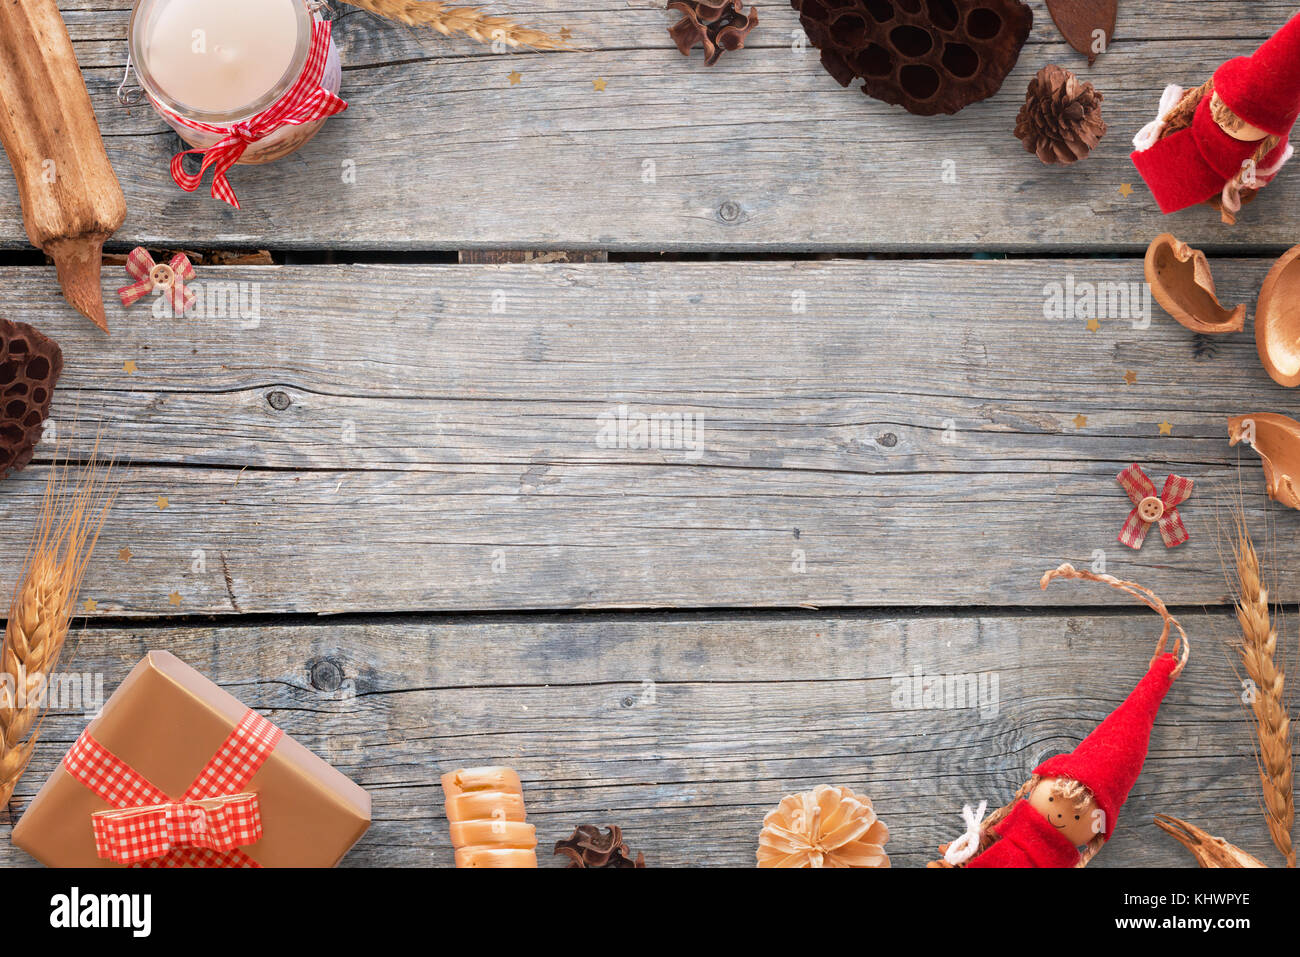 Couleur or et rouge décorations de Noël sur la table en bois. image de fond pour le texte. vue d'en haut. Banque D'Images